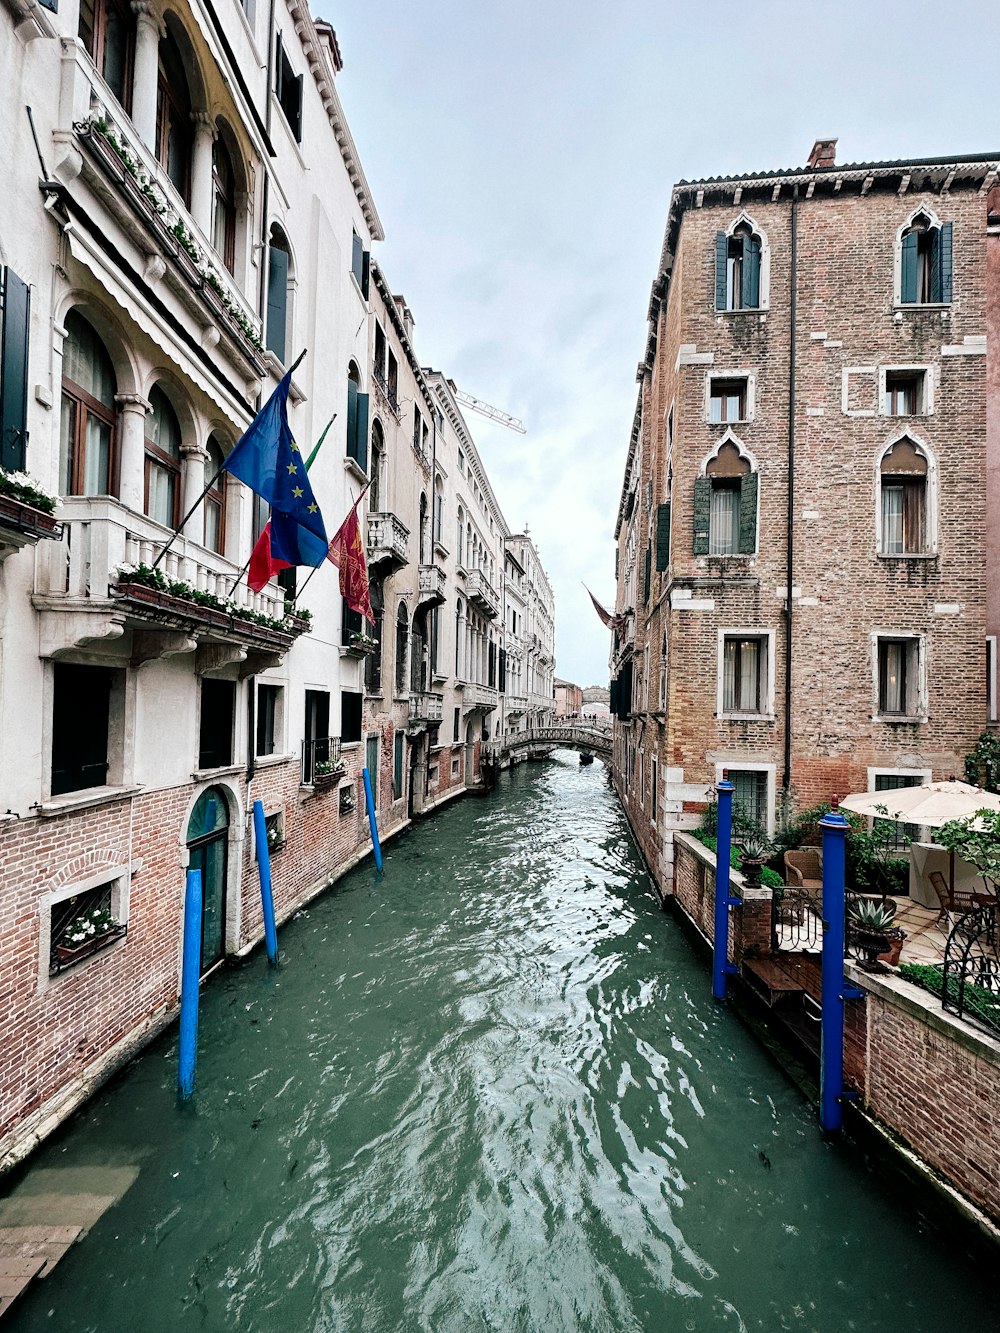 Un canal étroit dans une ville avec des bâtiments des deux côtés